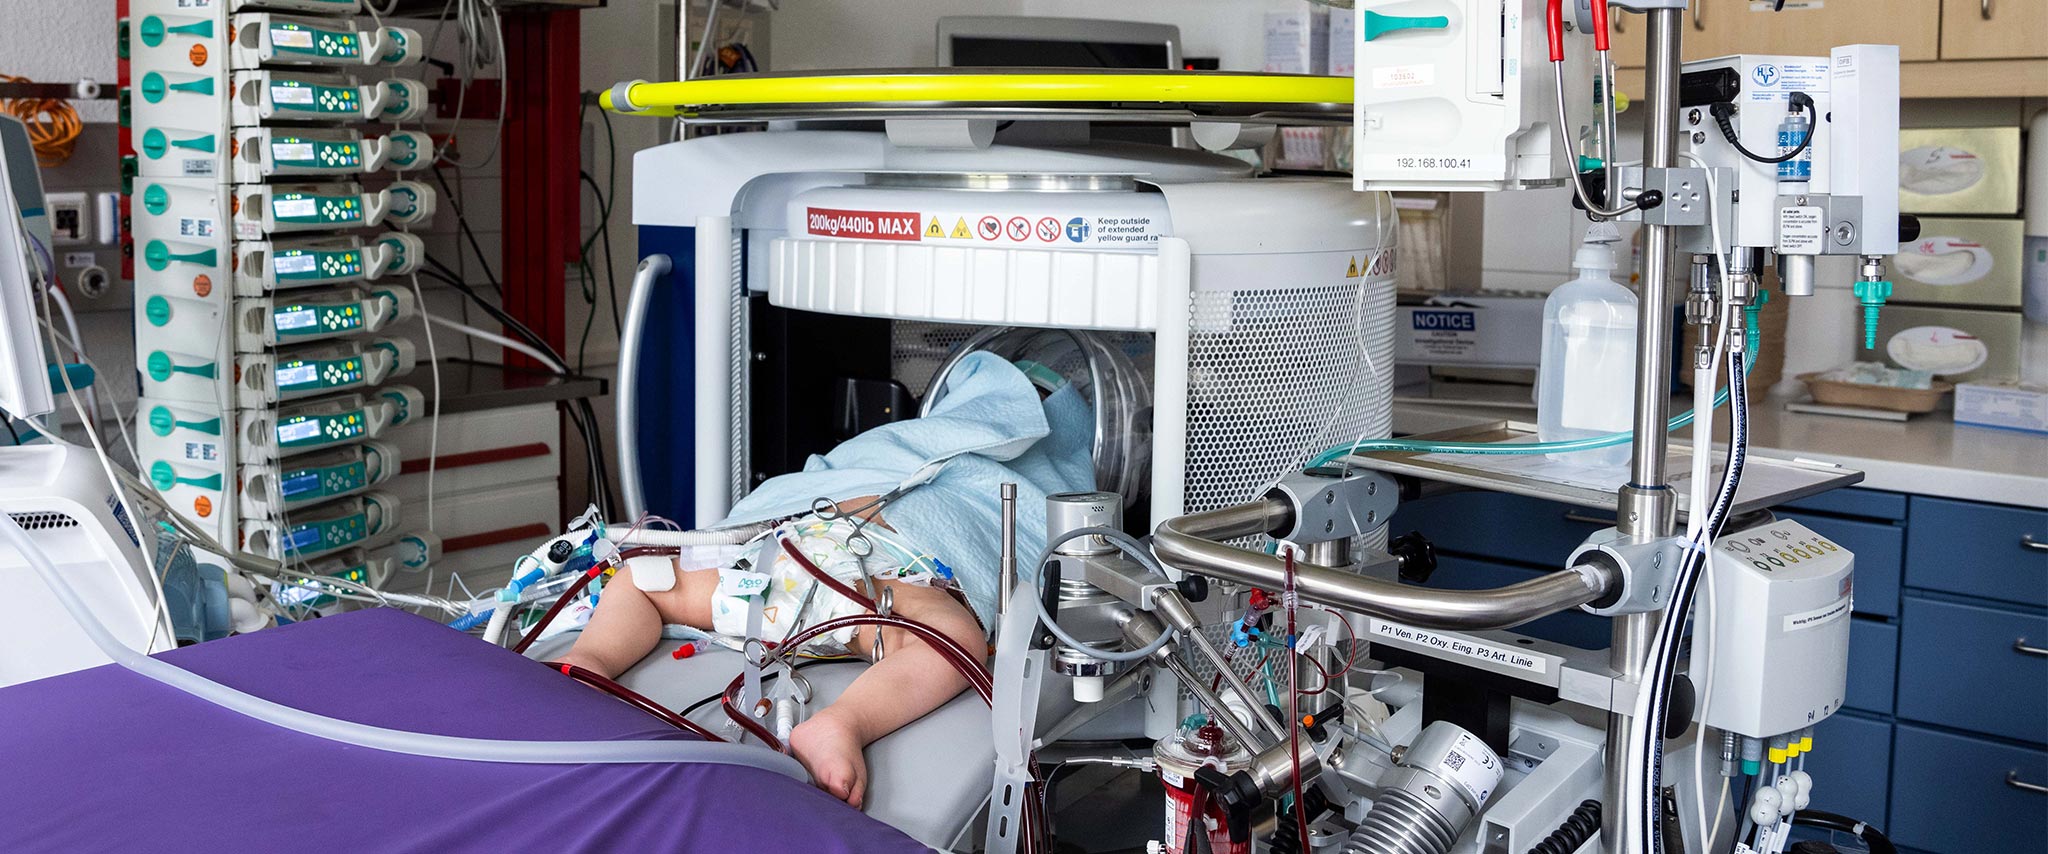 Weltweite erste Untersuchungen mit mobilem MRT bei pädiatrischen ECMO-Patientinnen und -Patienten